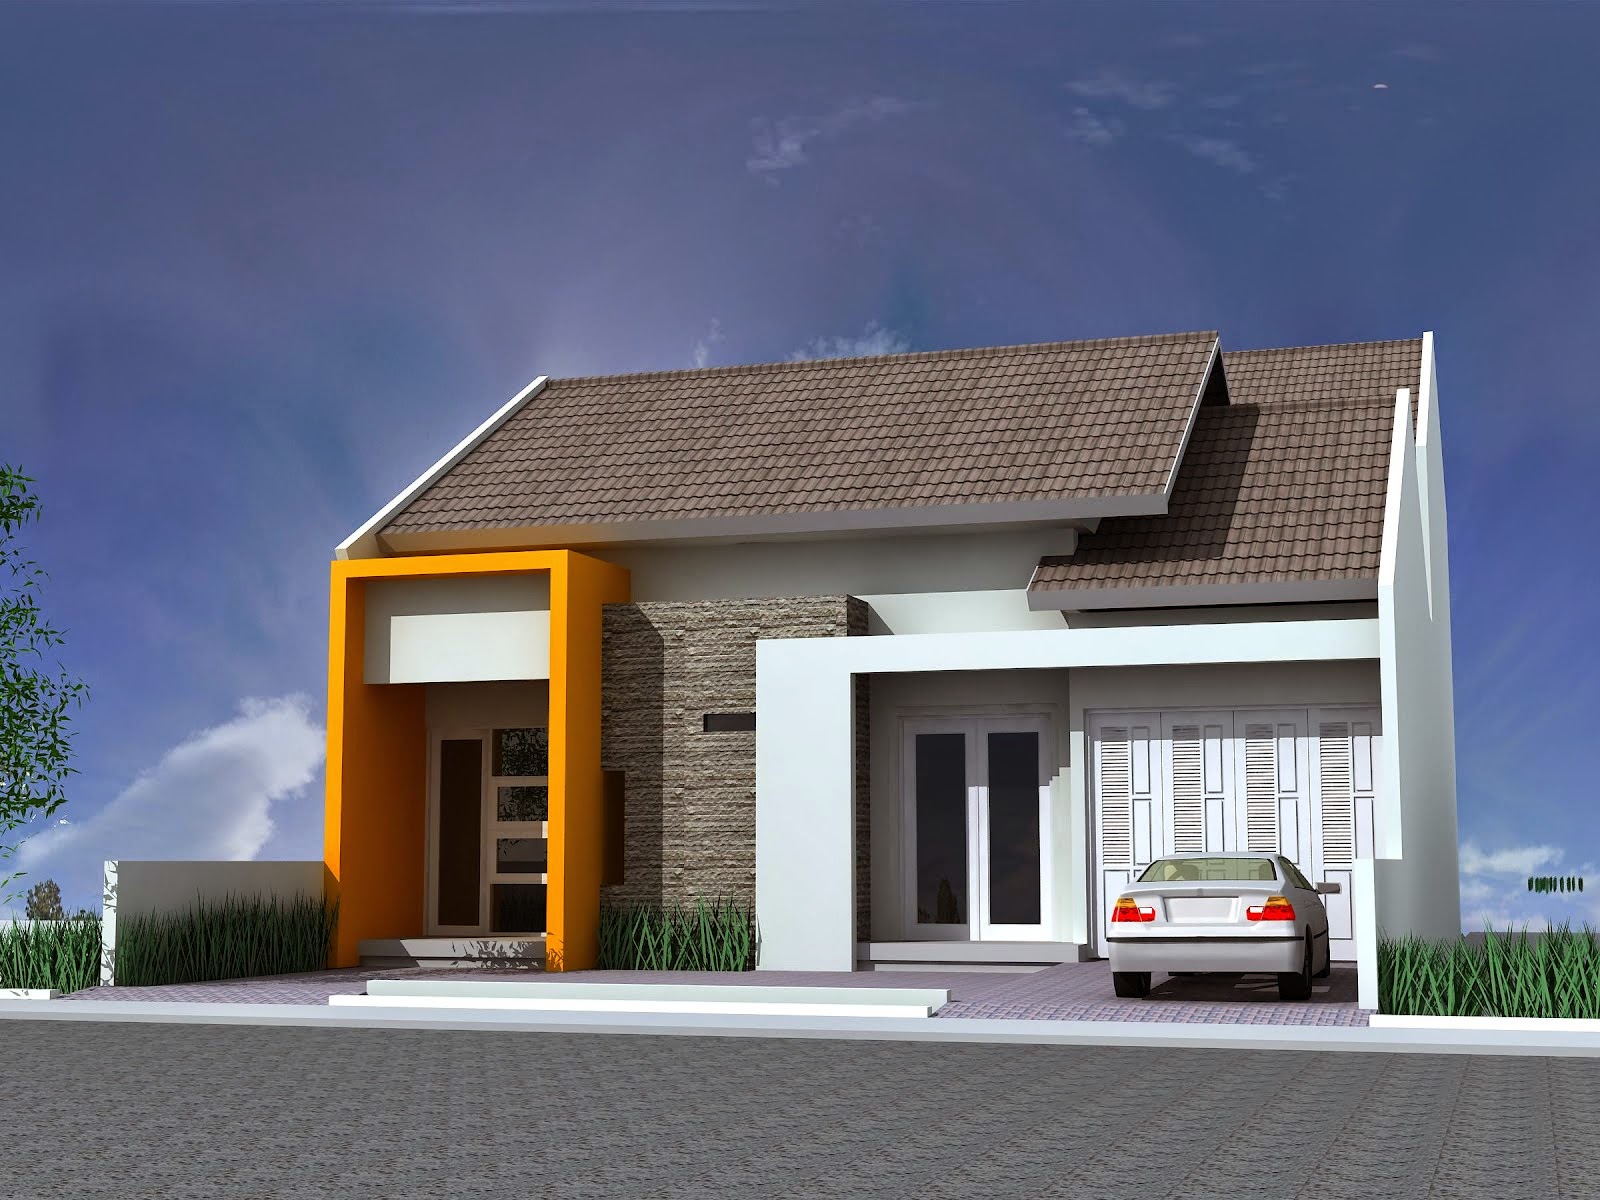 Gambar Rumah Minimalis Satu Lantai Terbaru 2015 | Desain Rumah Idaman